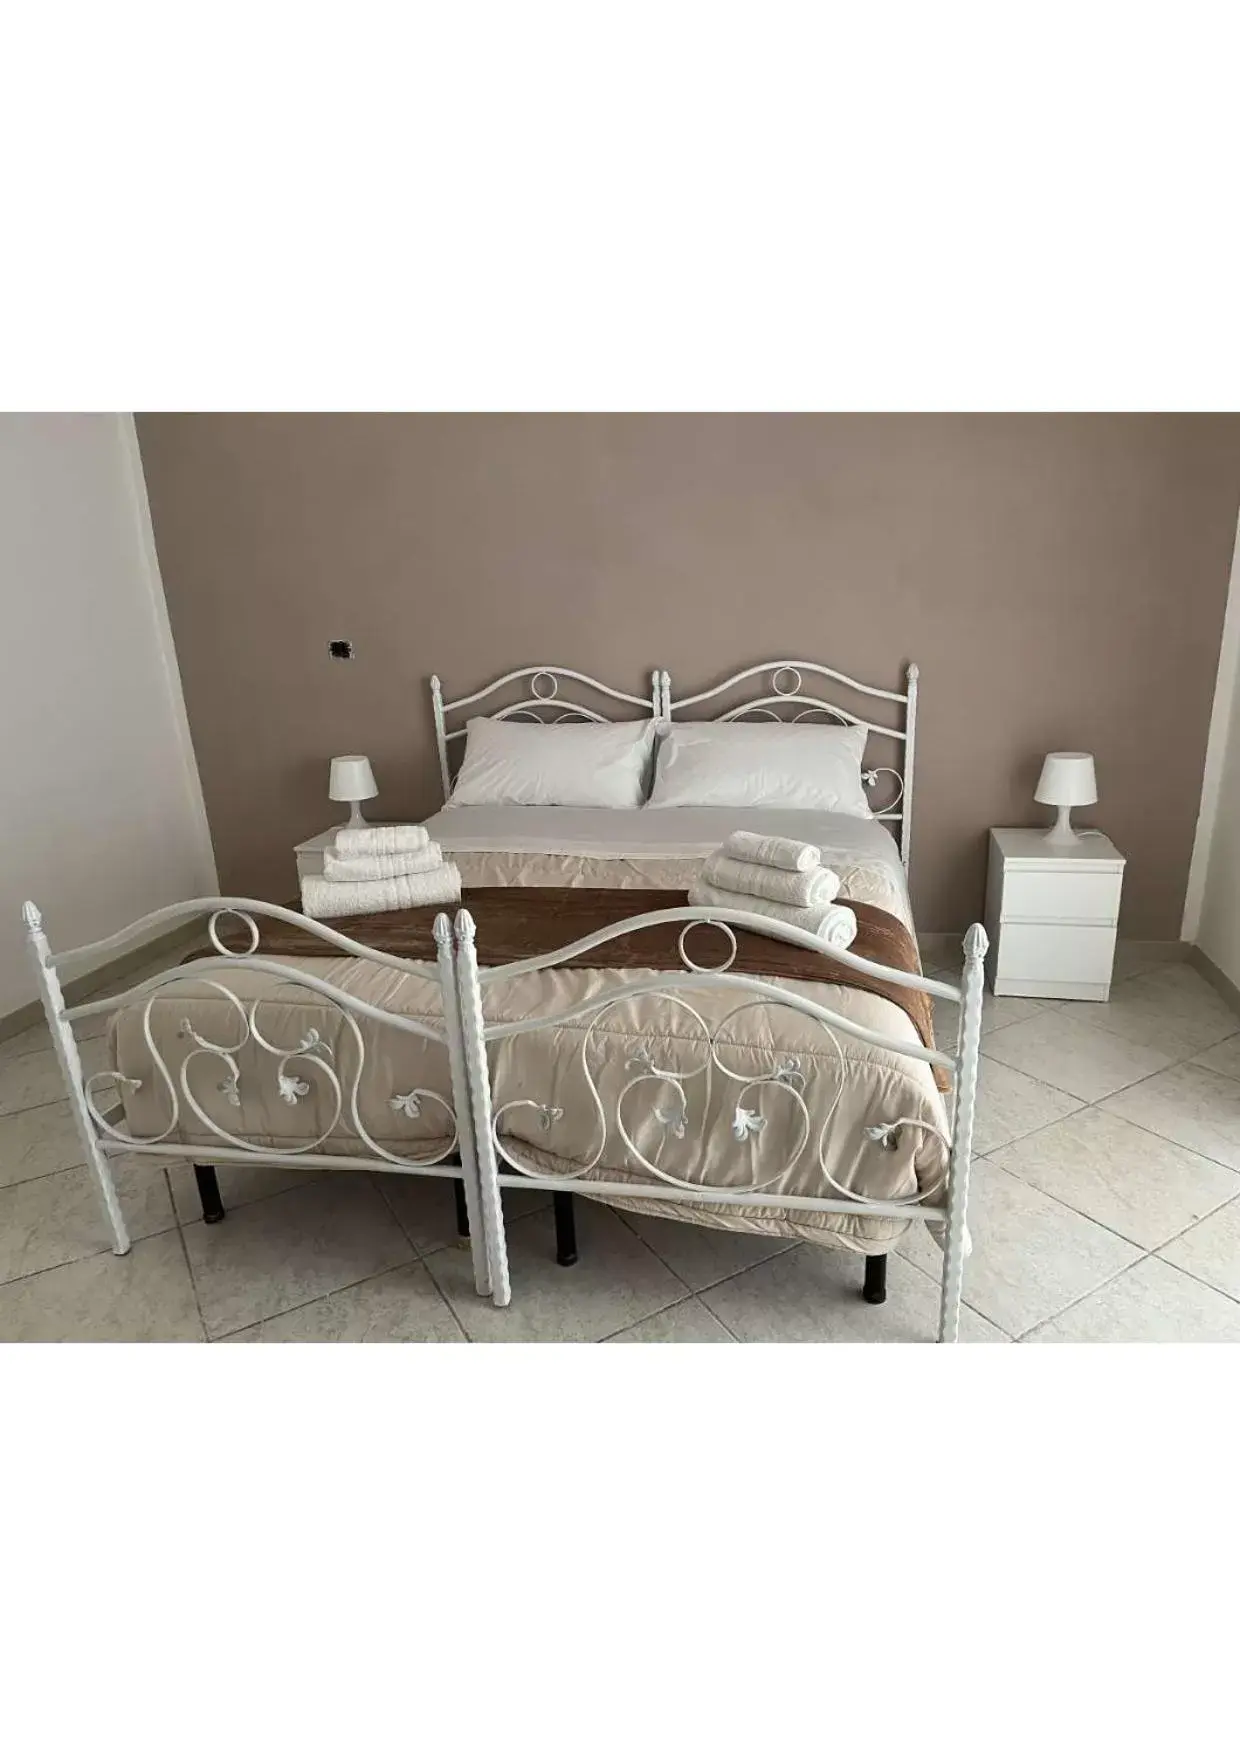 Bed in La Svolta rooms